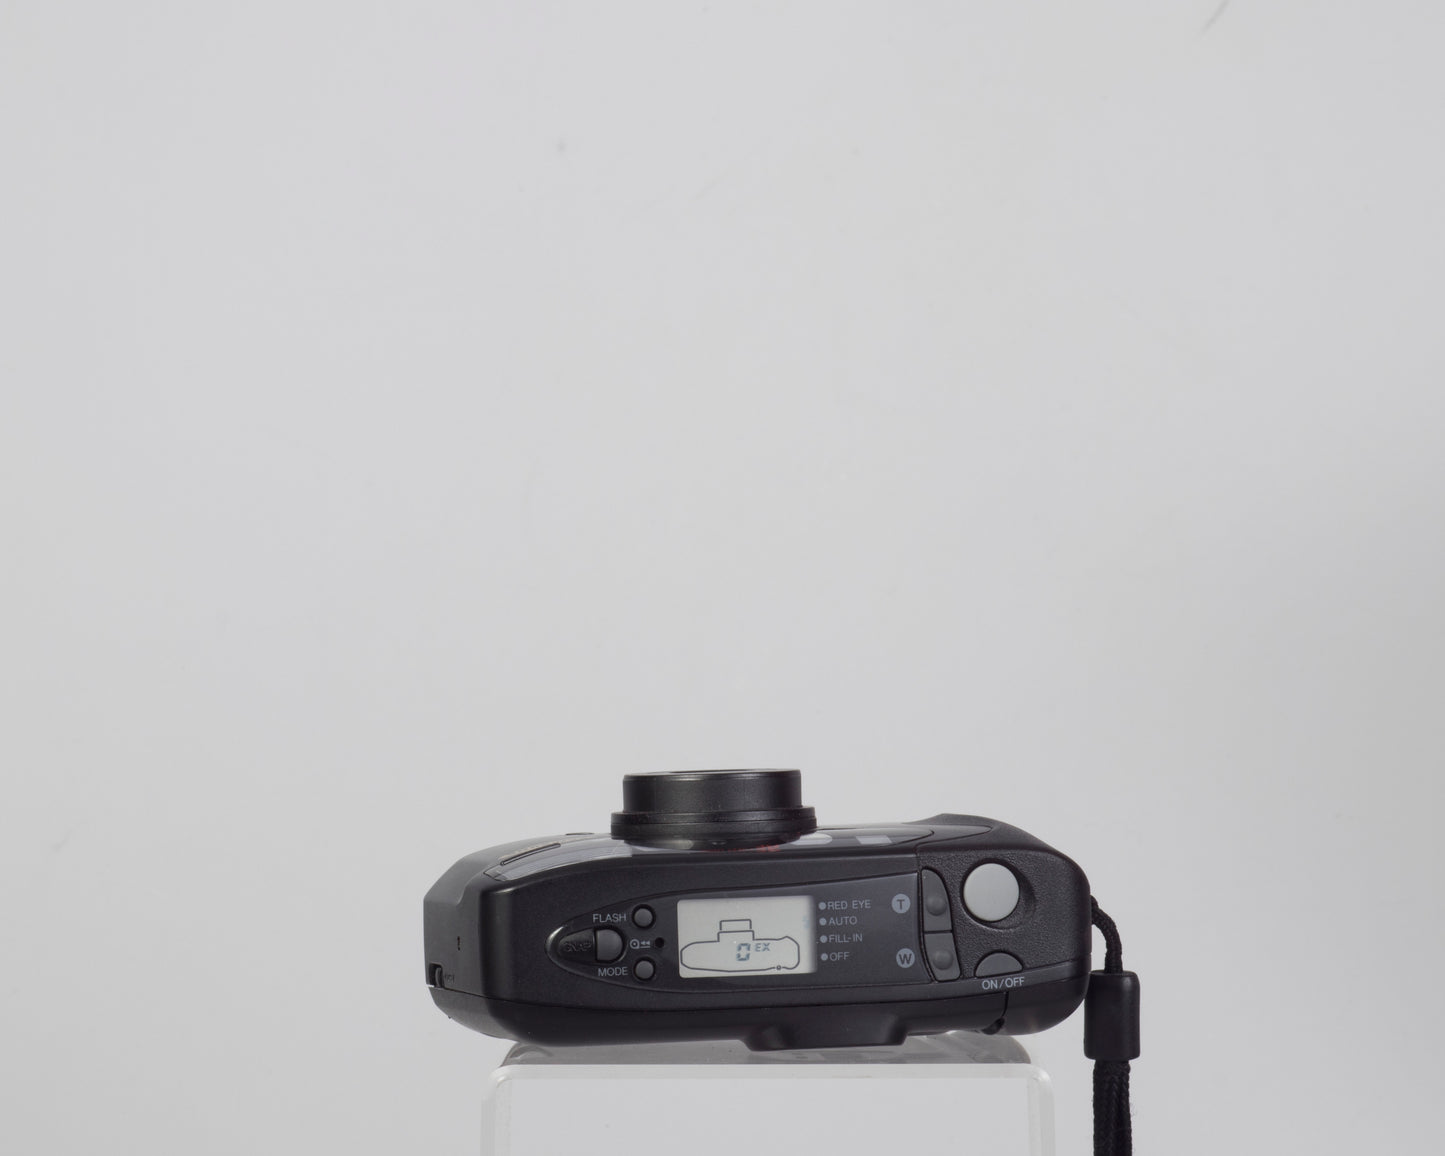 Appareil photo argentique Samsung AF Slim Zoom 35 mm avec étui (le flash ne fonctionne pas)